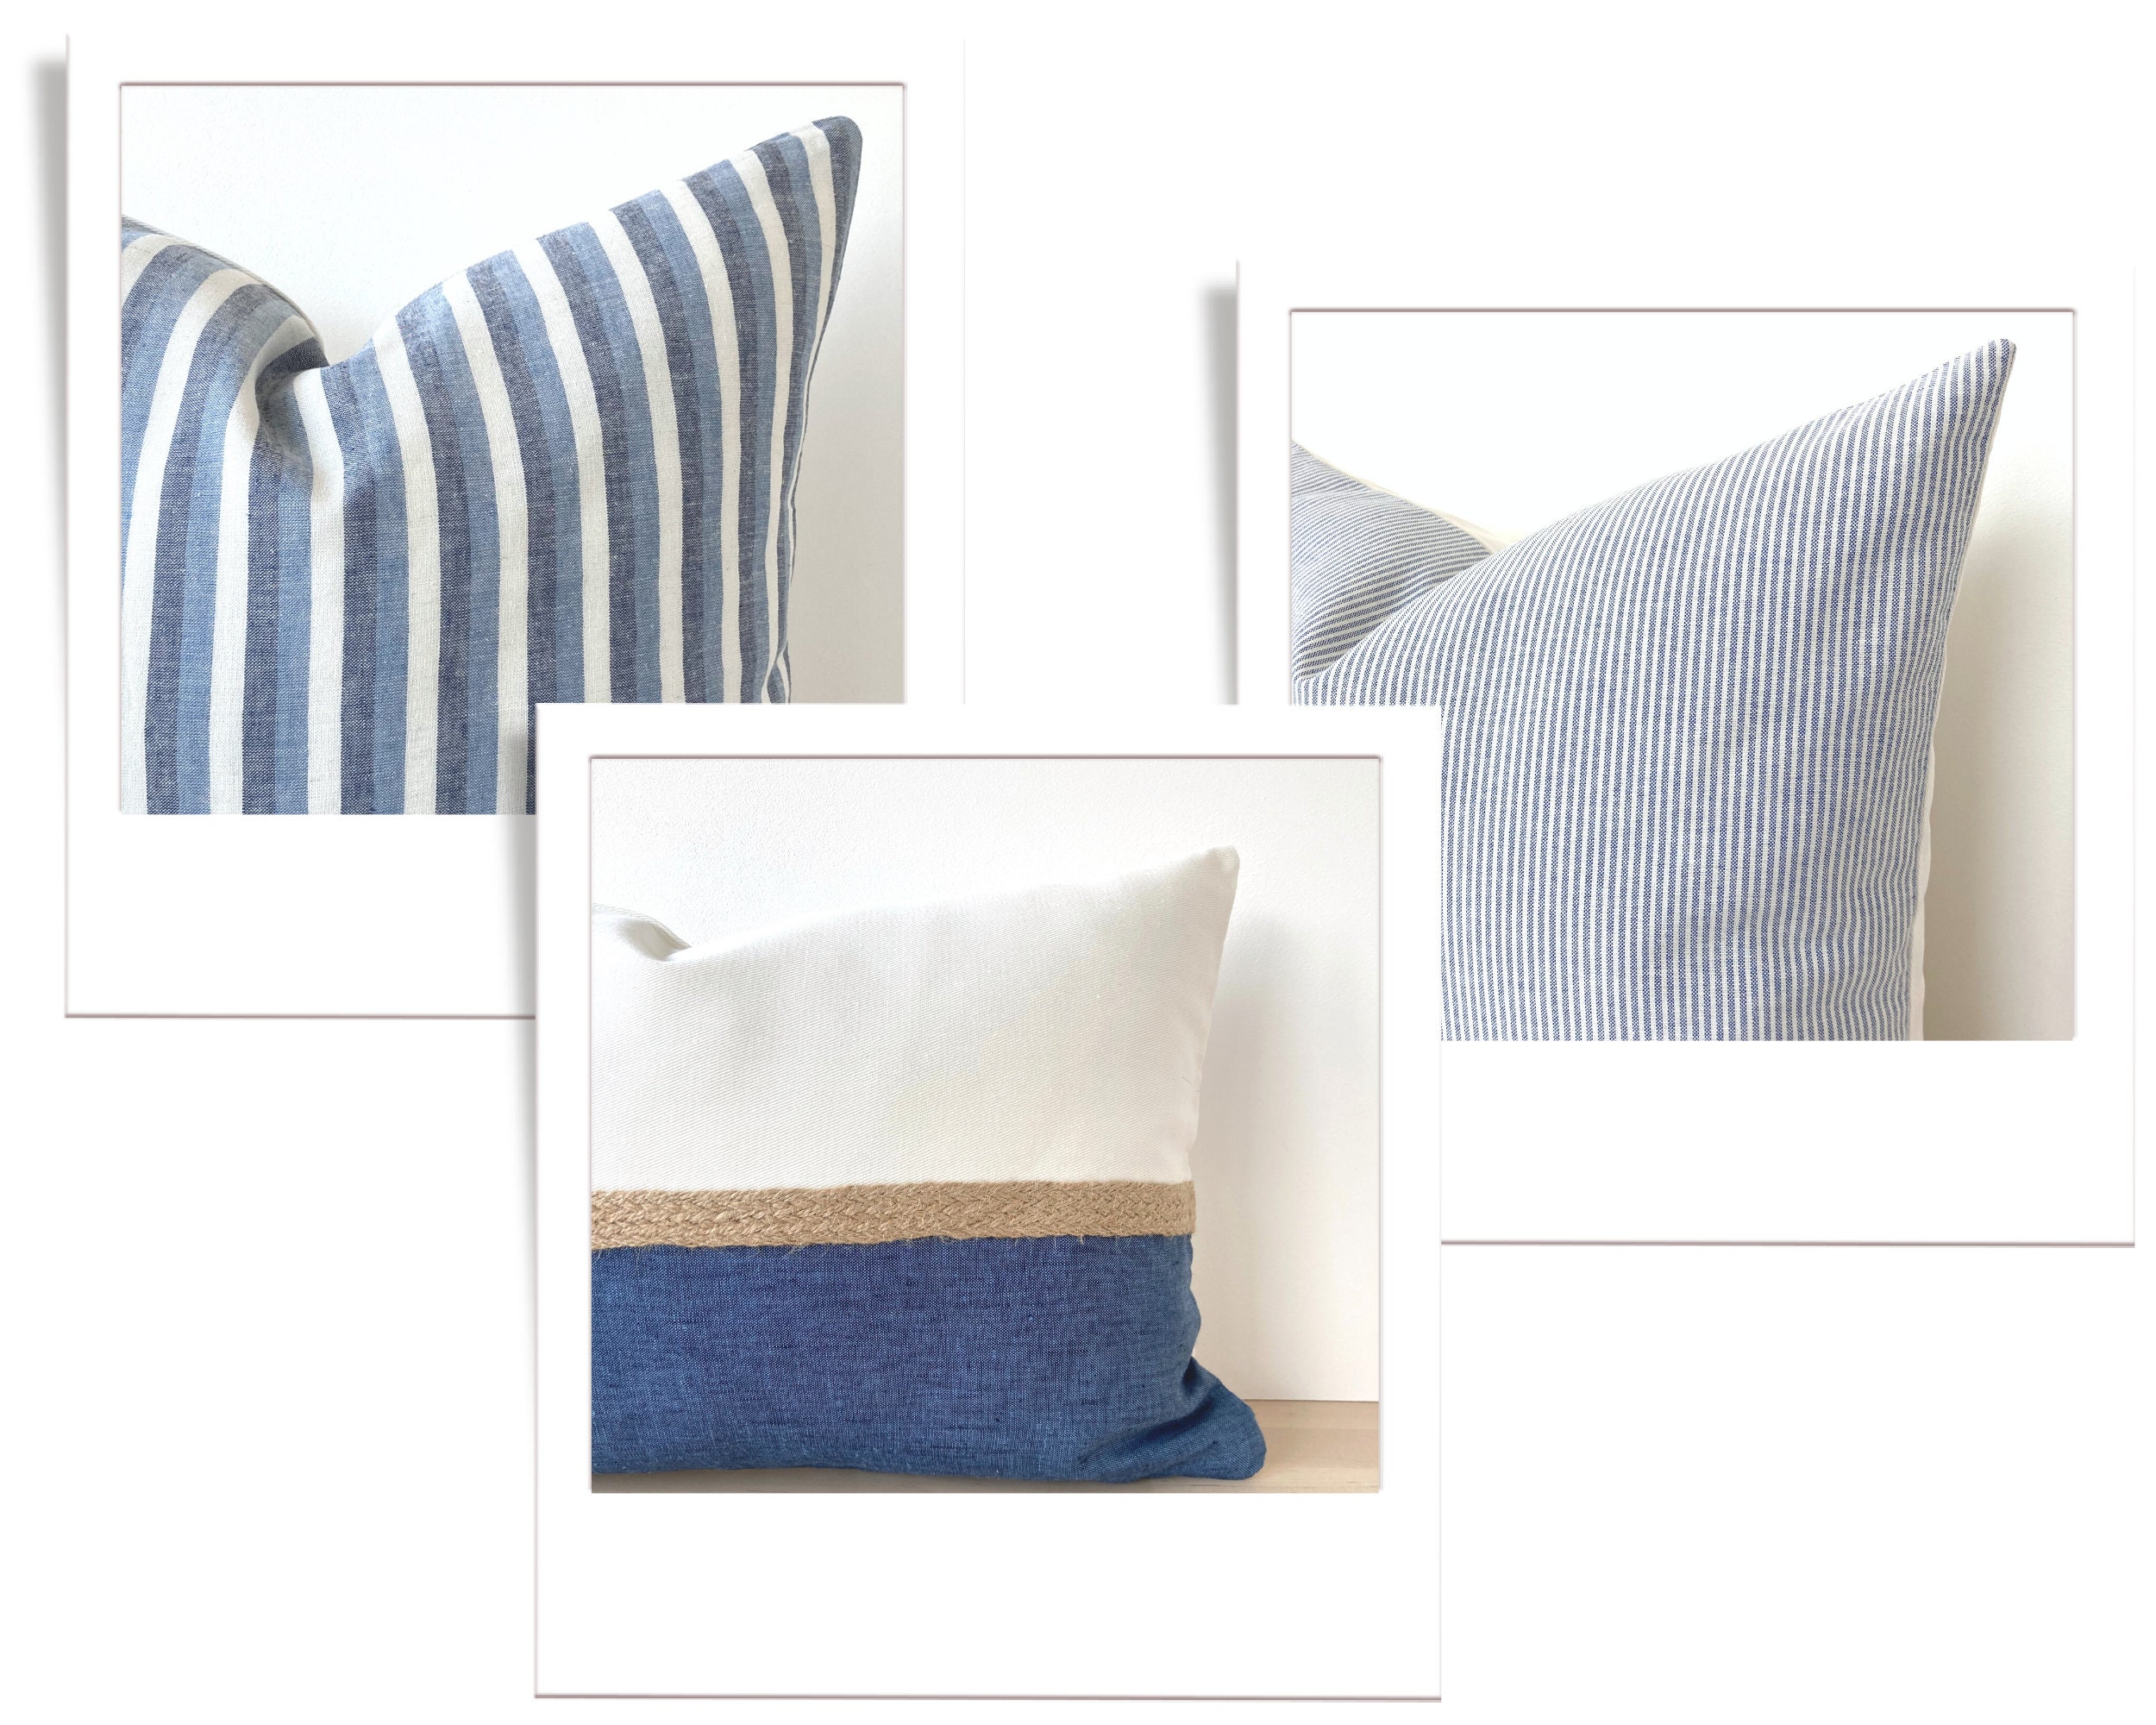 Coastal Linen Decorative Bed Pillow Cover Set, Blue Soft Linen Pillows,  Textured Cream Linen Pillows, Blue Cream Striped Long Kingbed Lumbar 